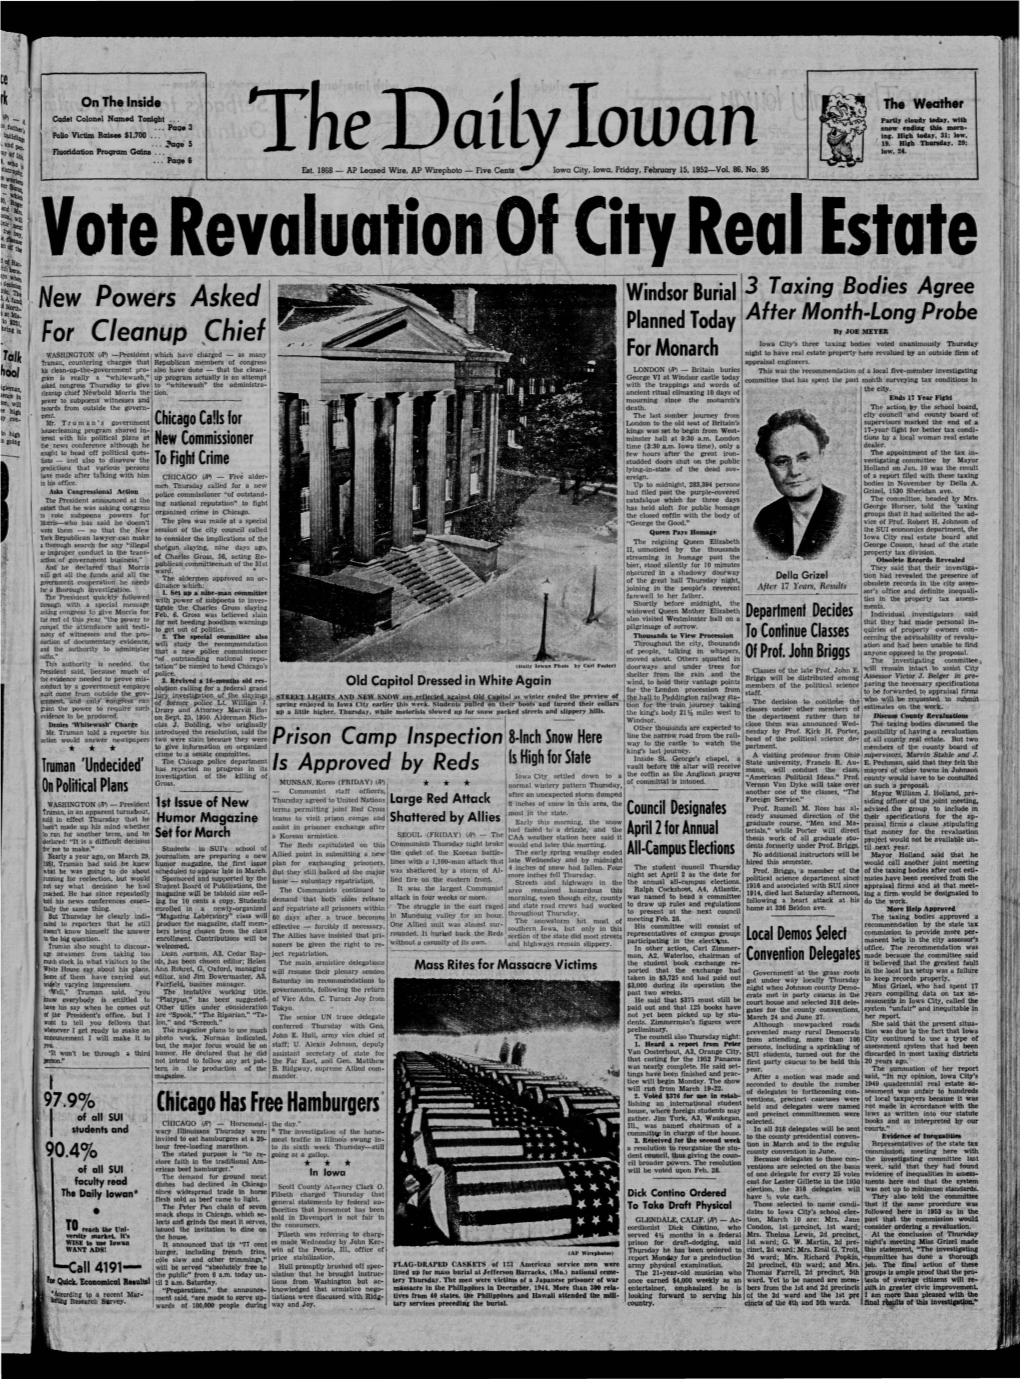 Daily Iowan (Iowa City, Iowa), 1952-02-15